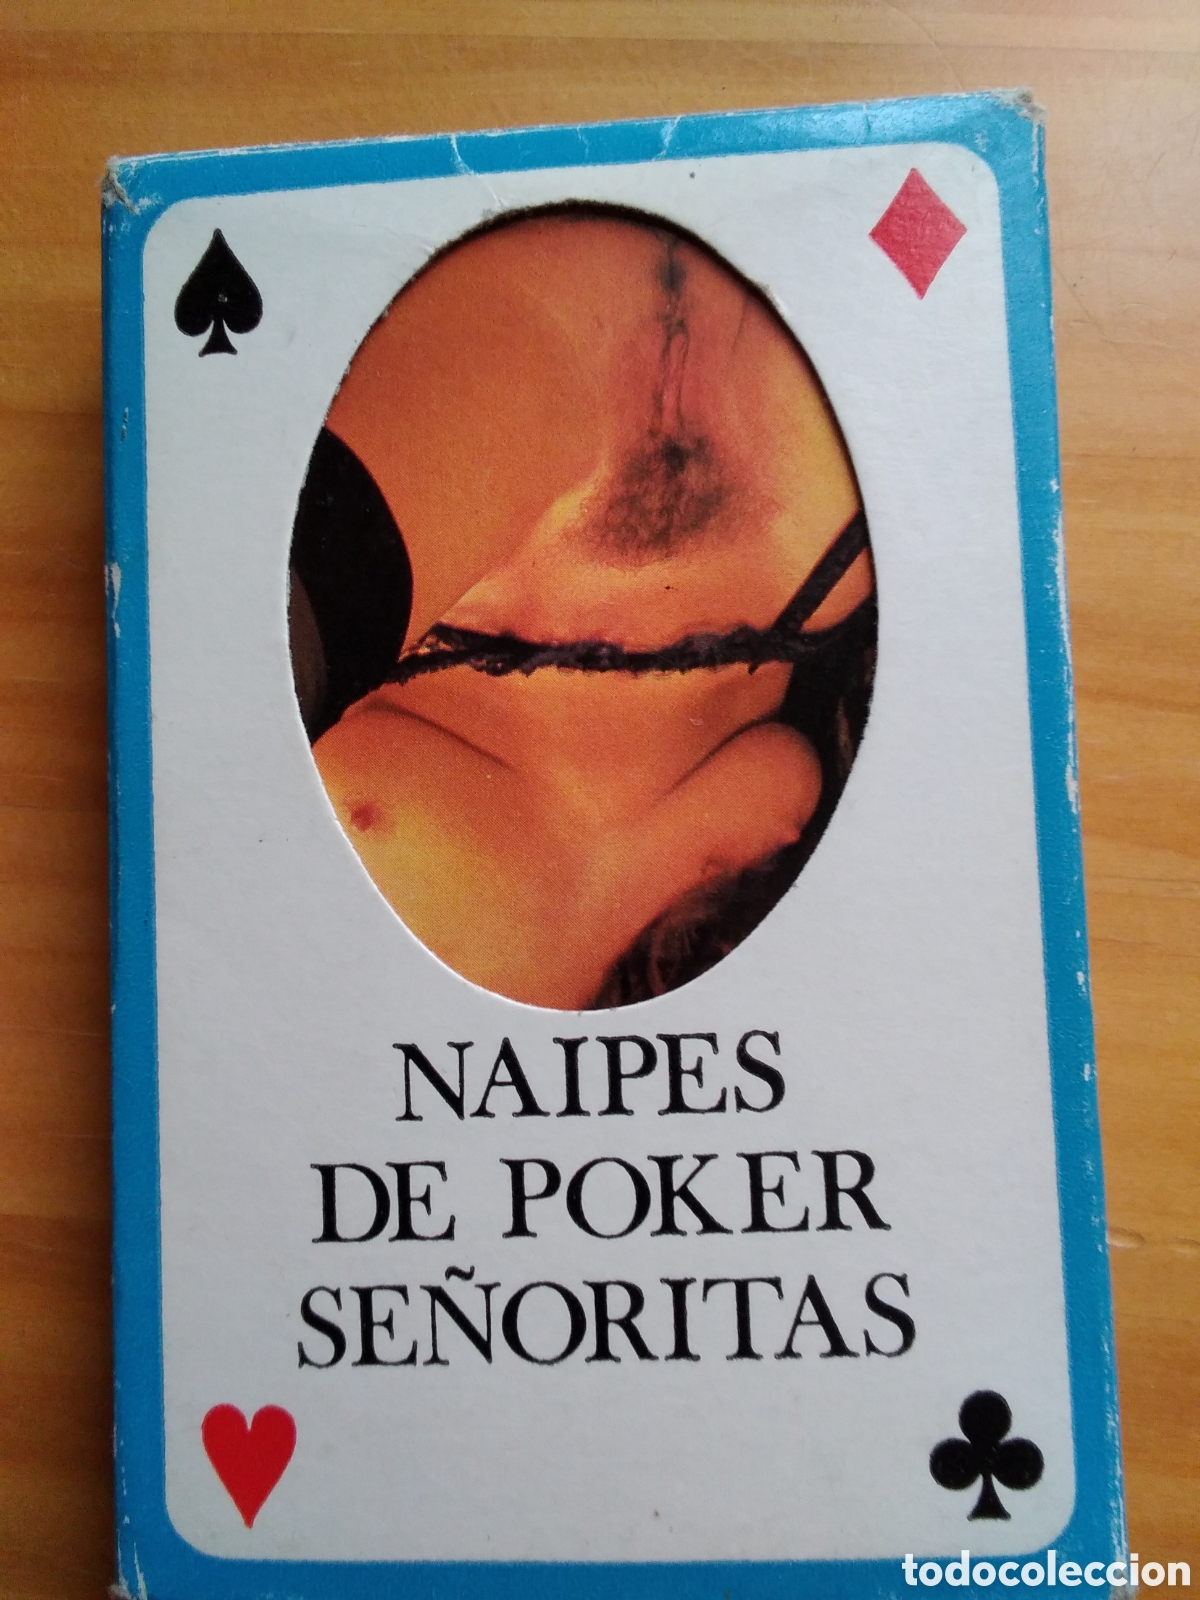 Cartas Eróticas (Spanish Edition)